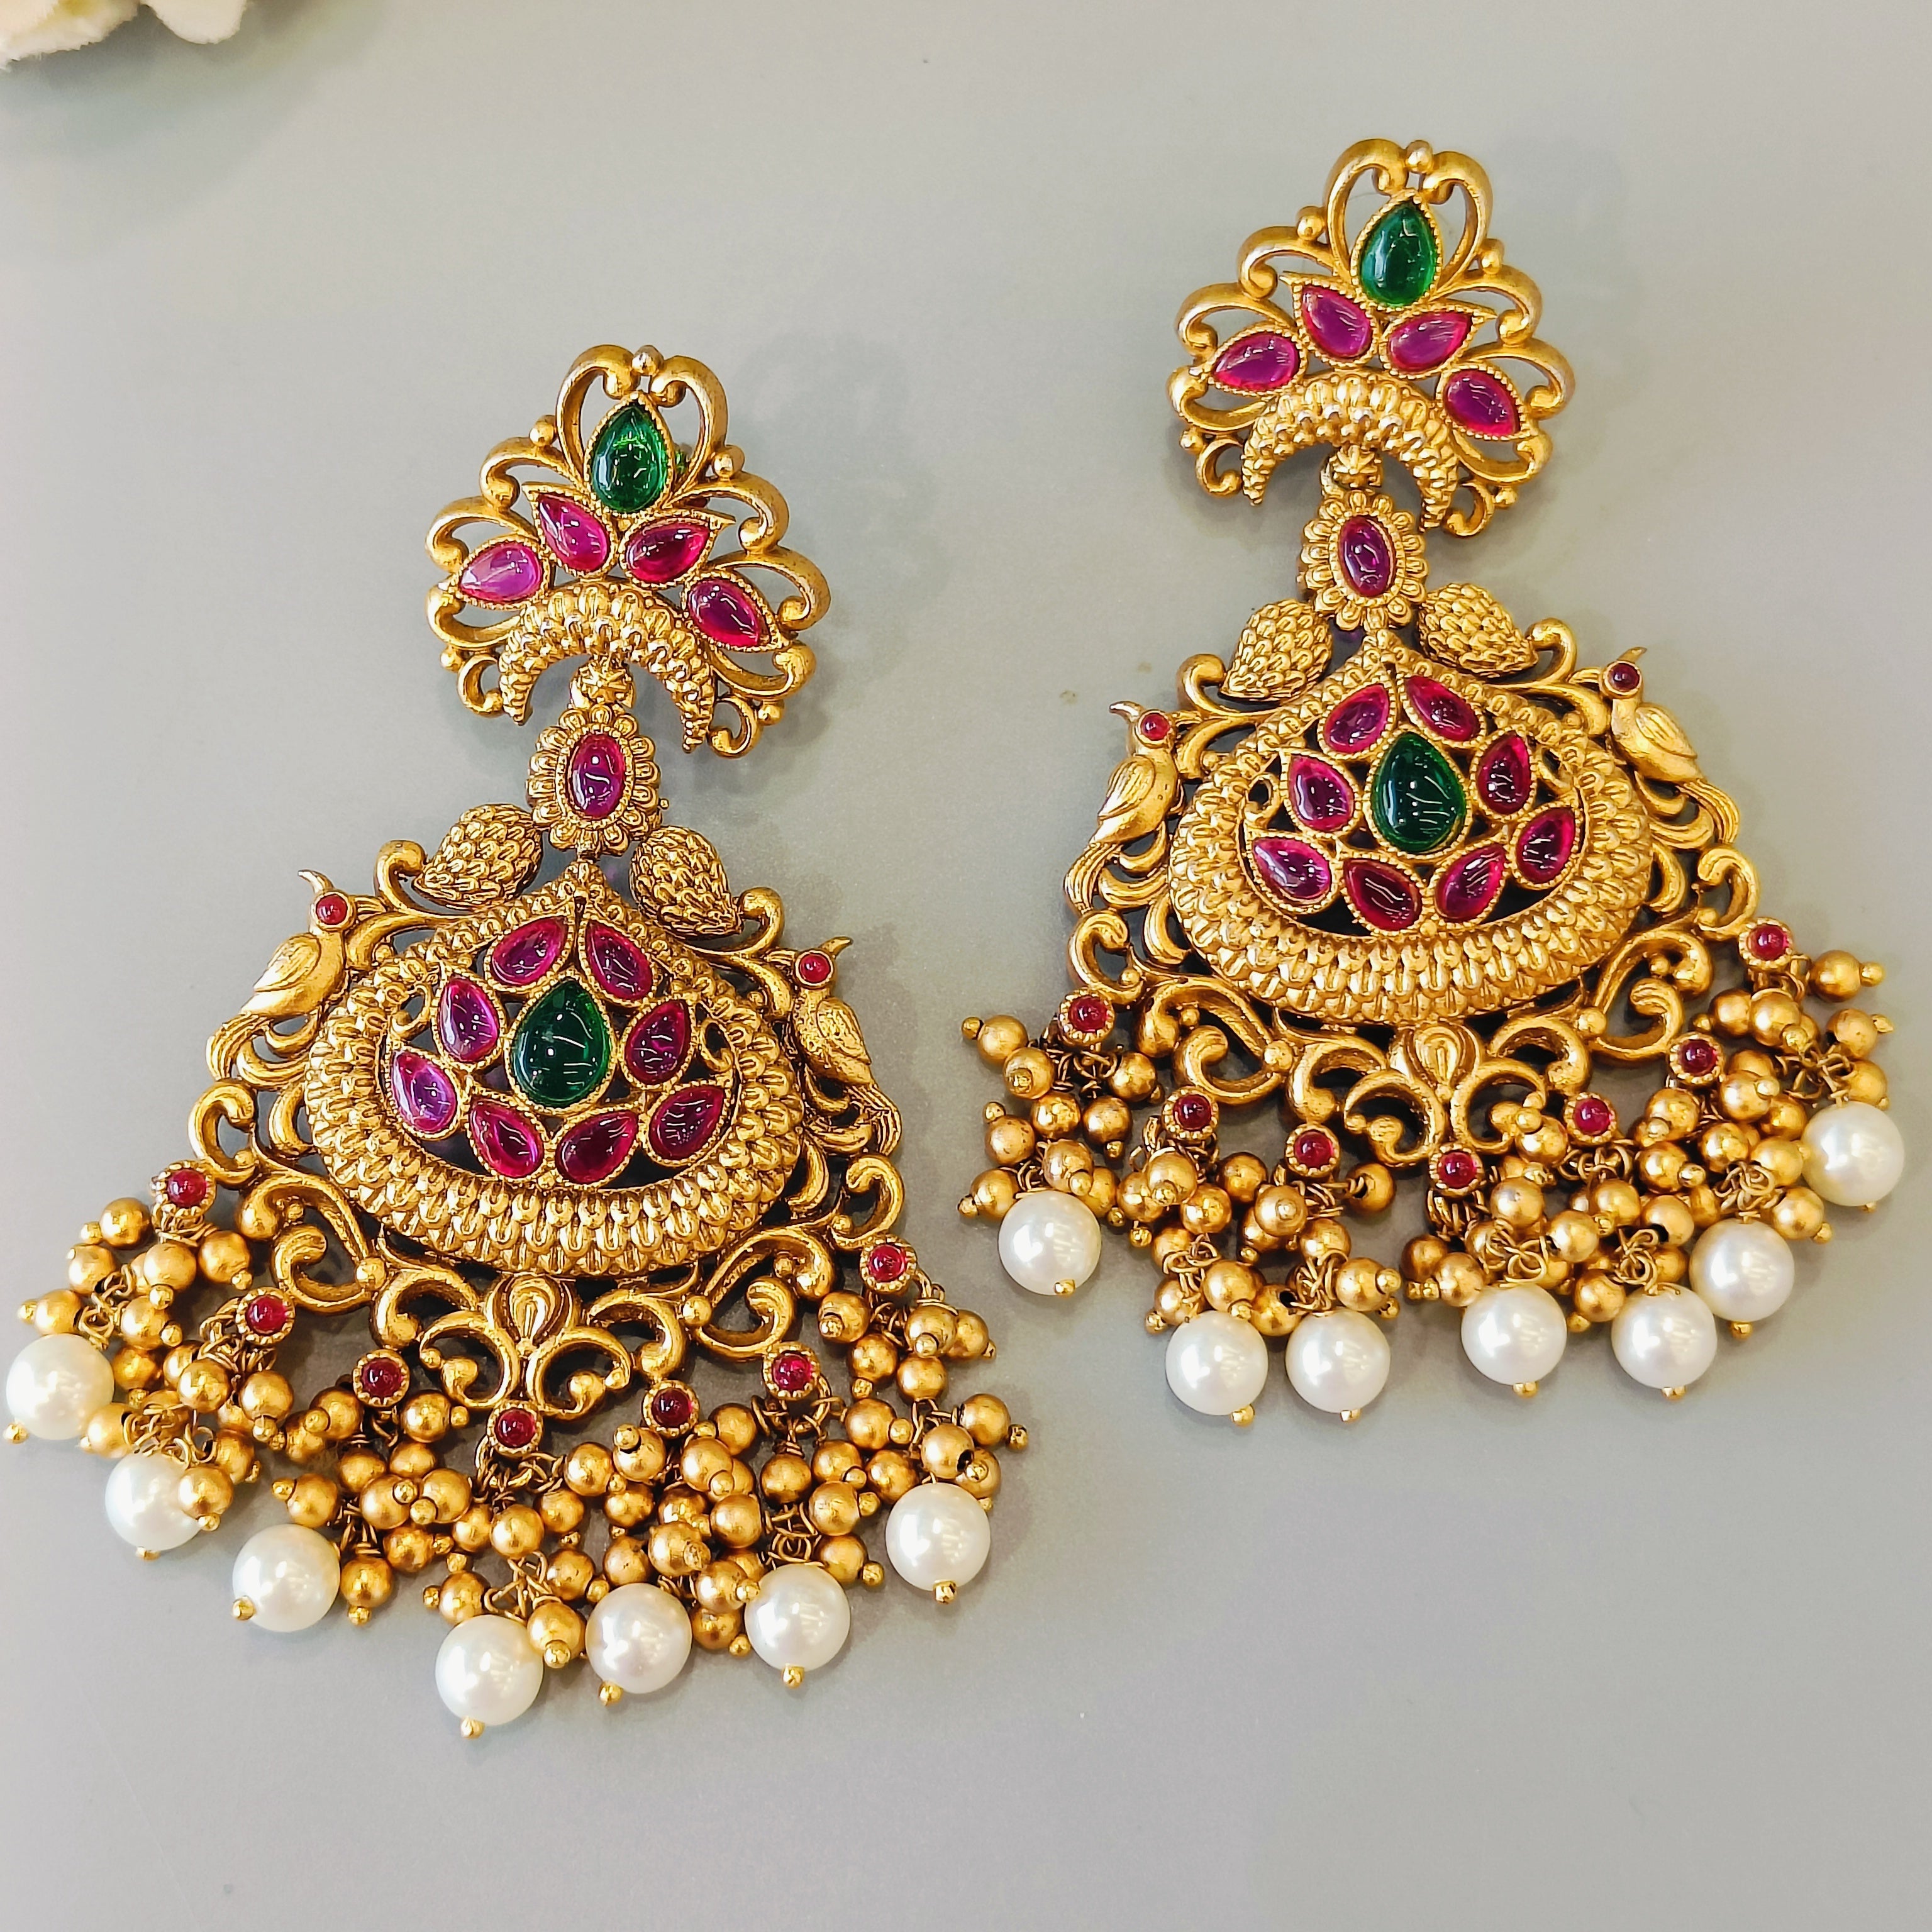 Nayaab Mayur earrings